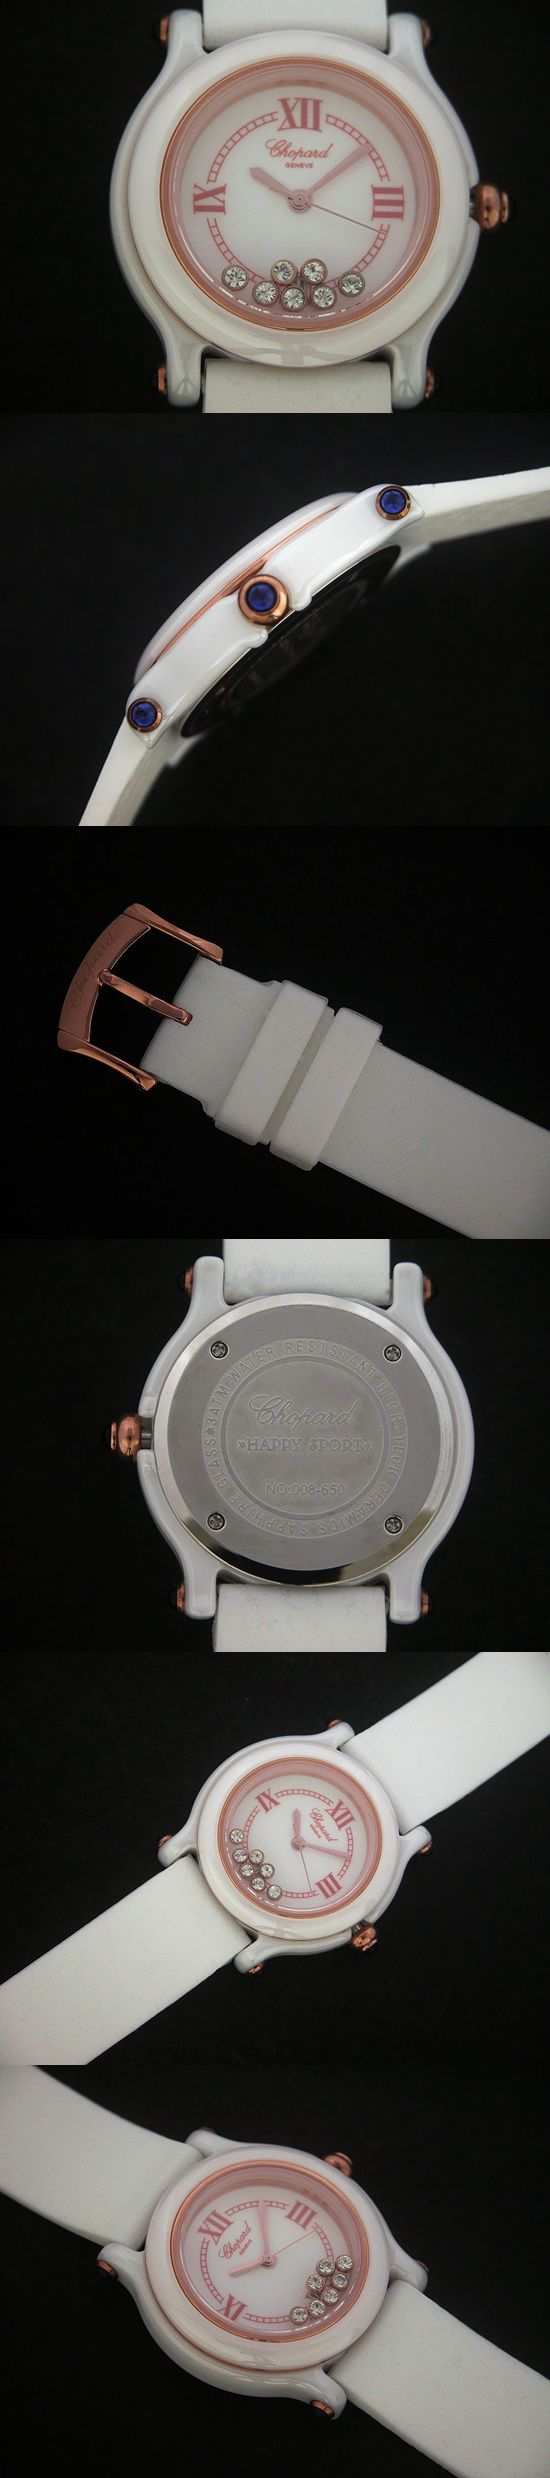 おしゃれなブランド時計がショパール-CHOPARD-ハッピースポーツ-27-8245-23-ac  女性用腕時計を提供します.